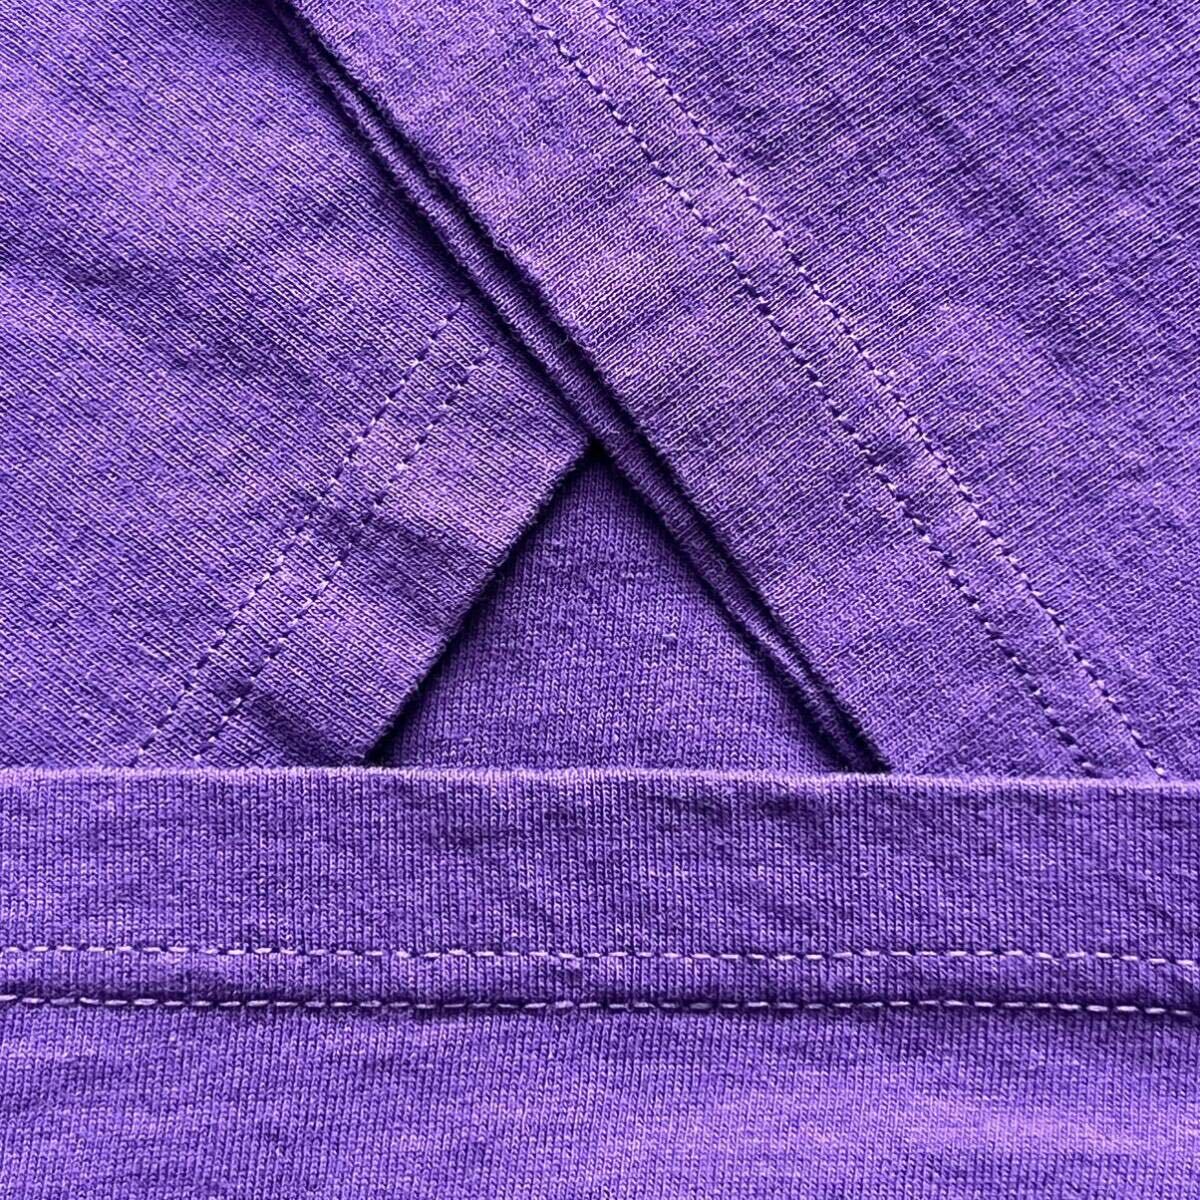 リーボック Reebok ベクターロゴ 半袖Tシャツ XLサイズ 古着 紫 パープル 綿 コットン 送料込